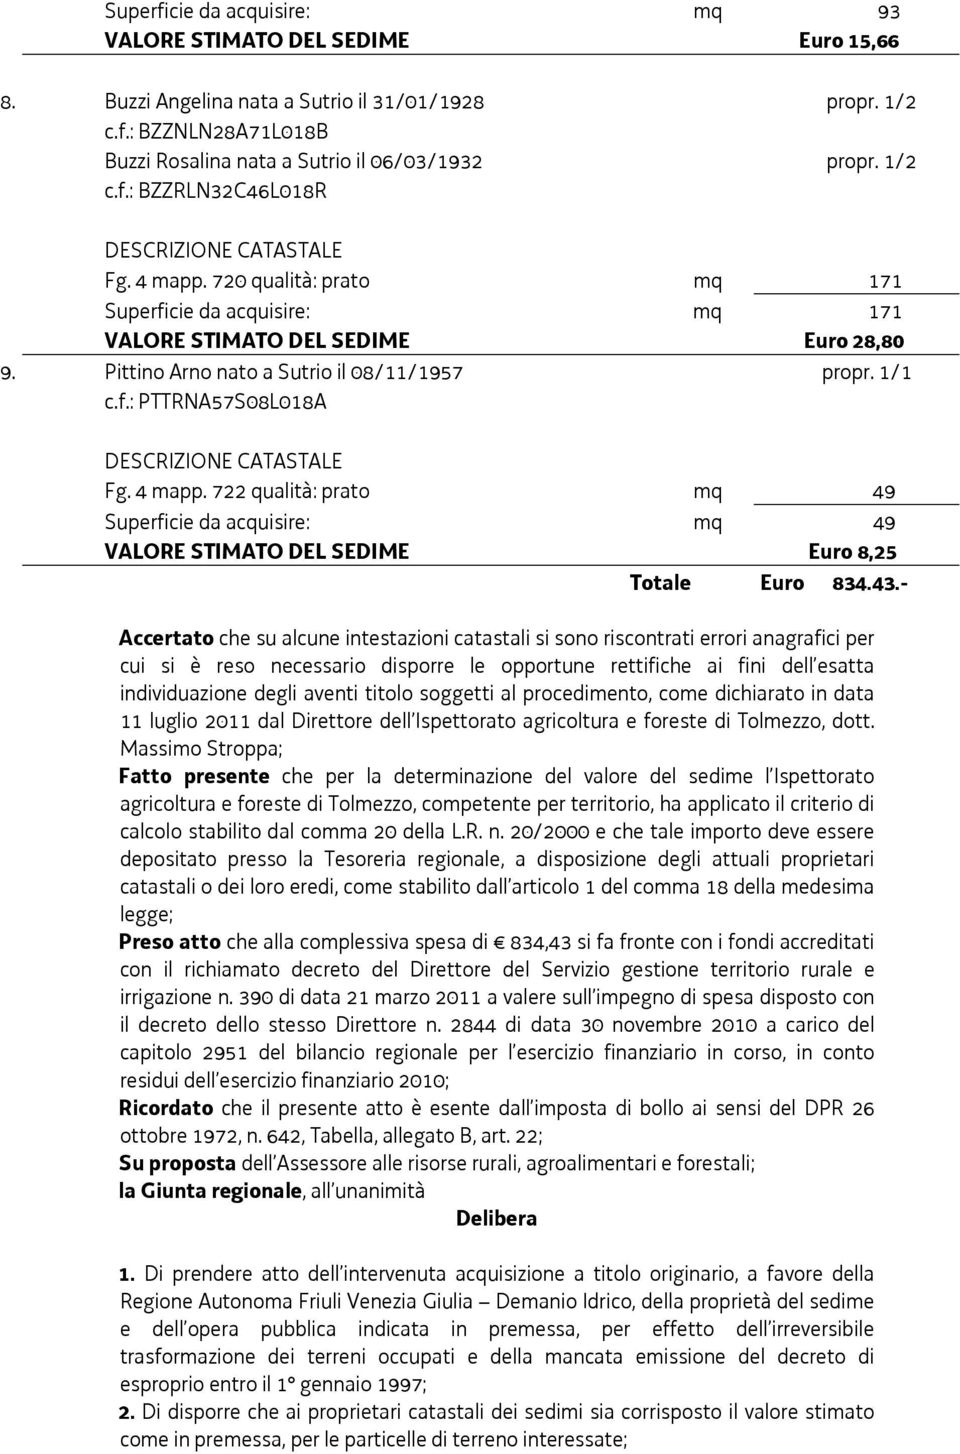 4 mapp. 722 qualità: prato mq 49 Superficie da acquisire: mq 49 VALORE STIMATO DEL SEDIME Euro 8,25 Totale Euro 834.43.